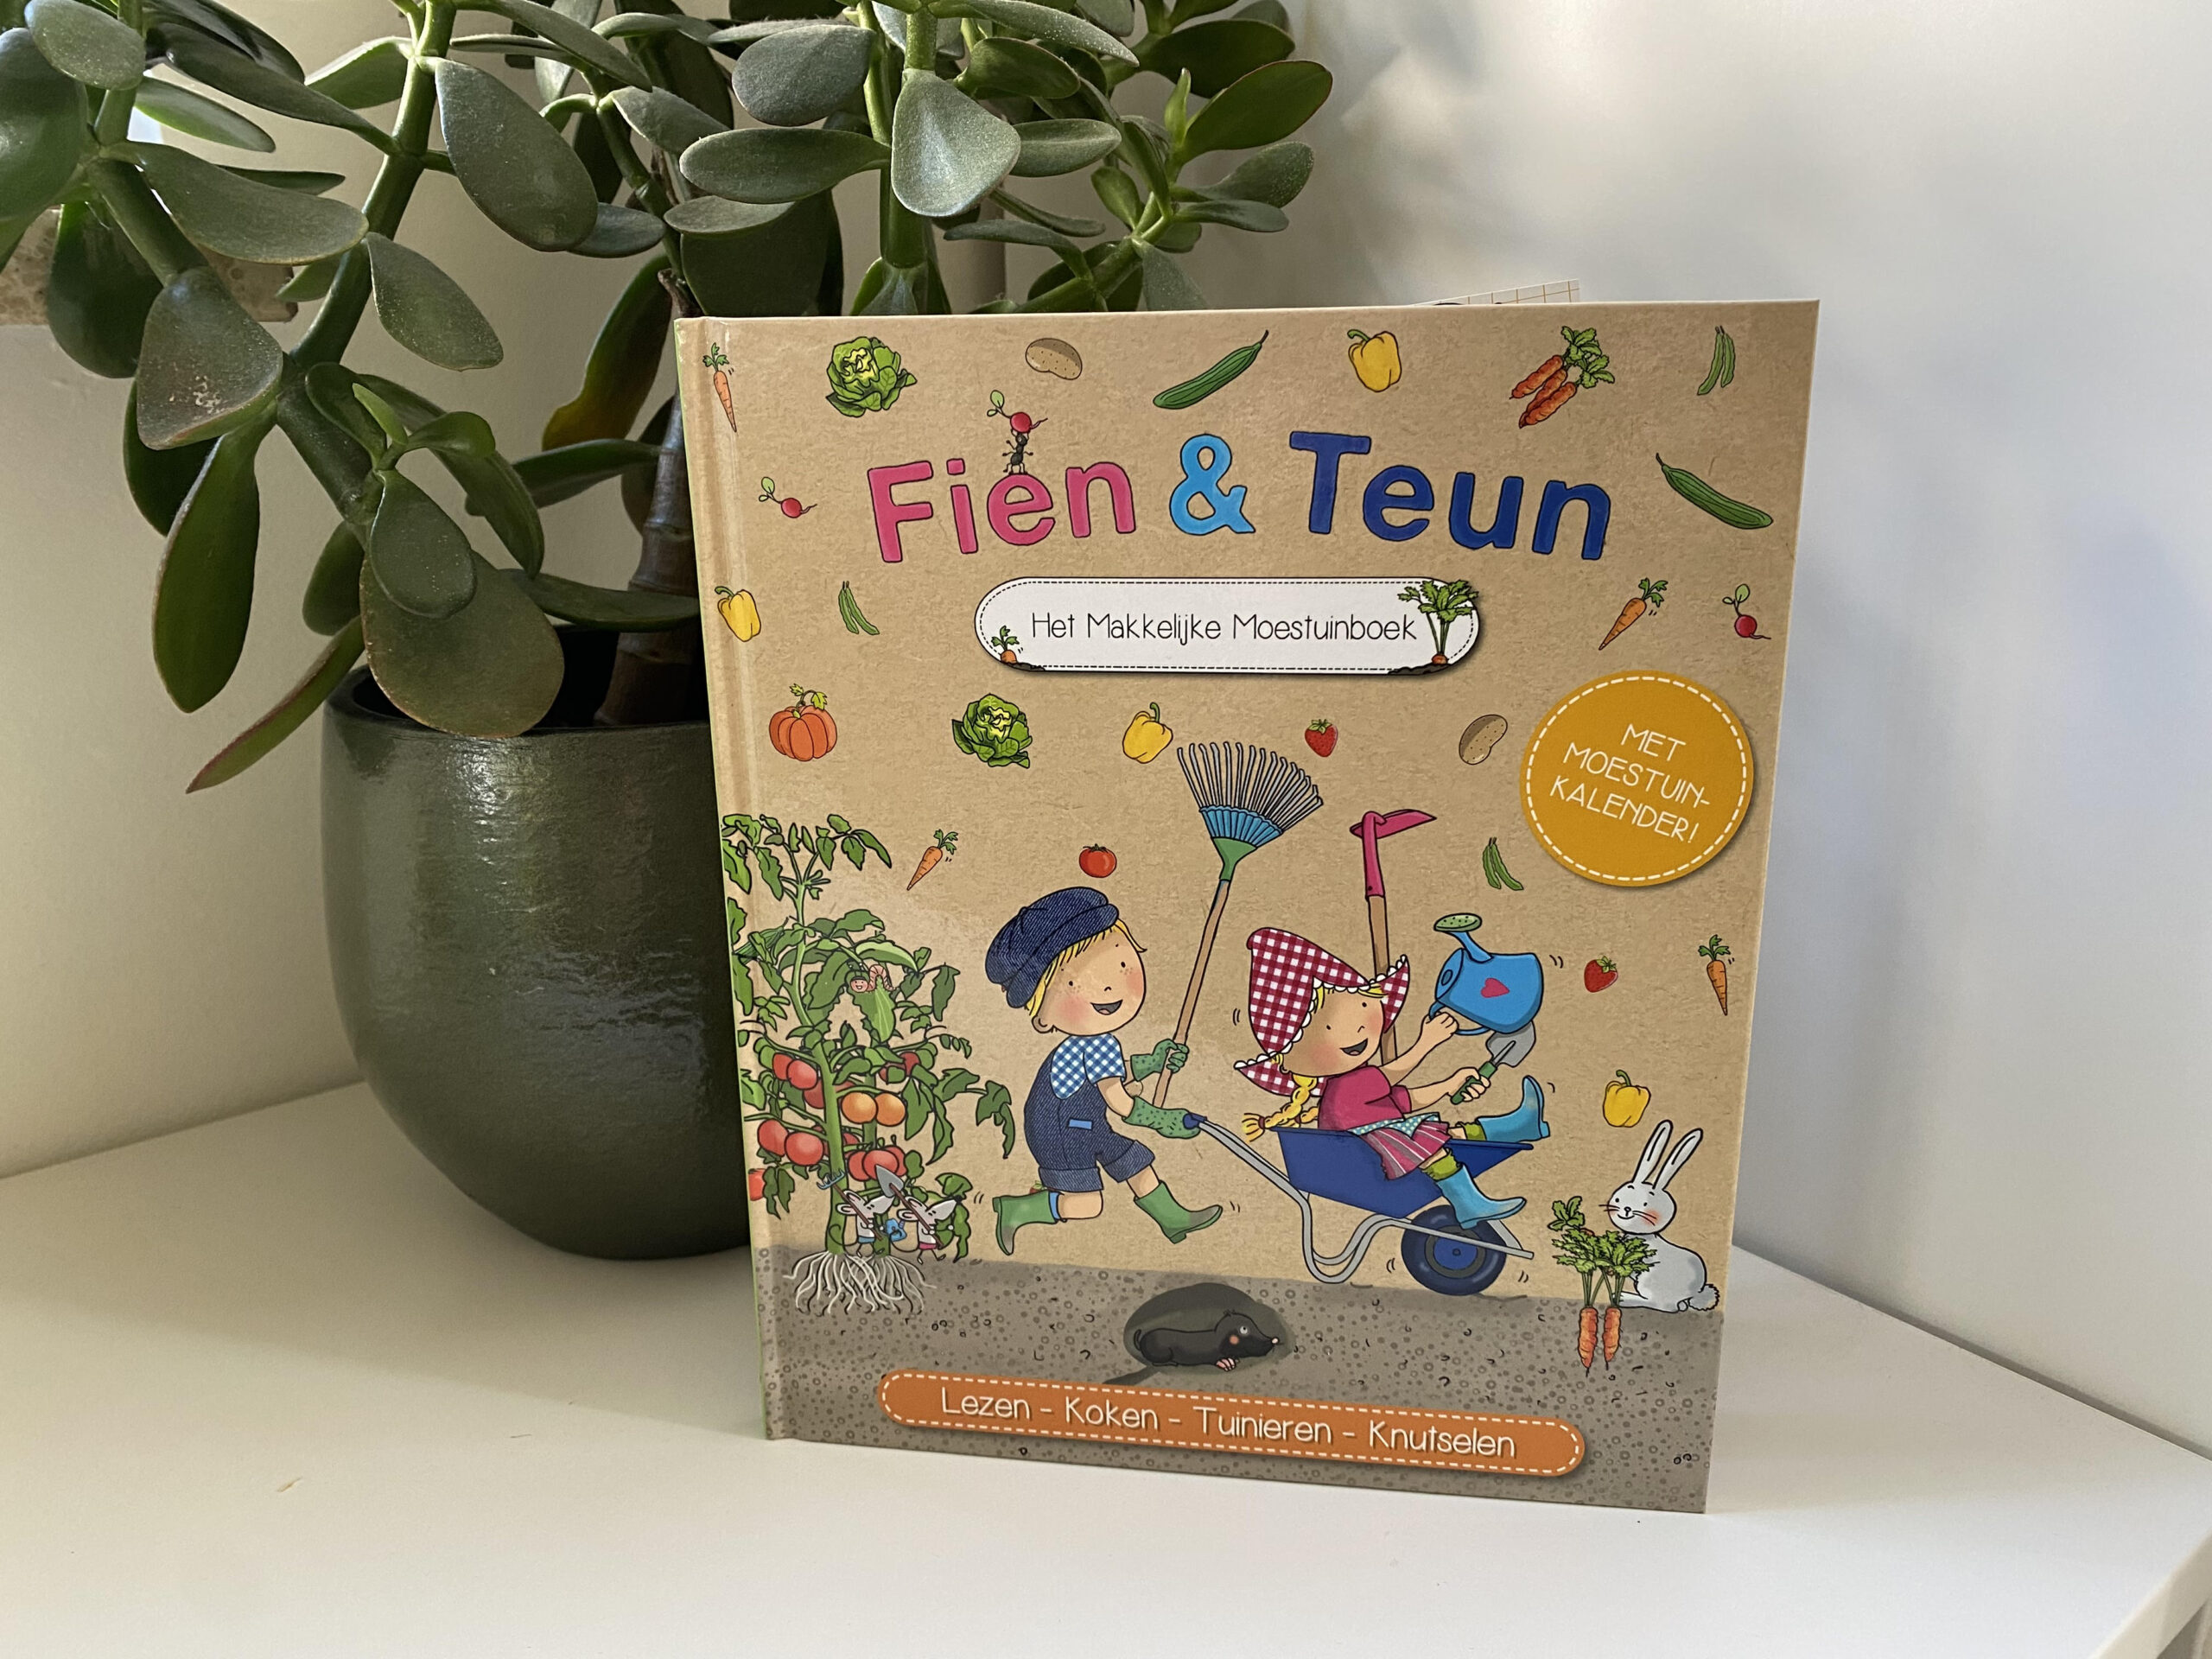 Fien & Teun Het Makkelijke Moestuinboek voor actieve kinderen